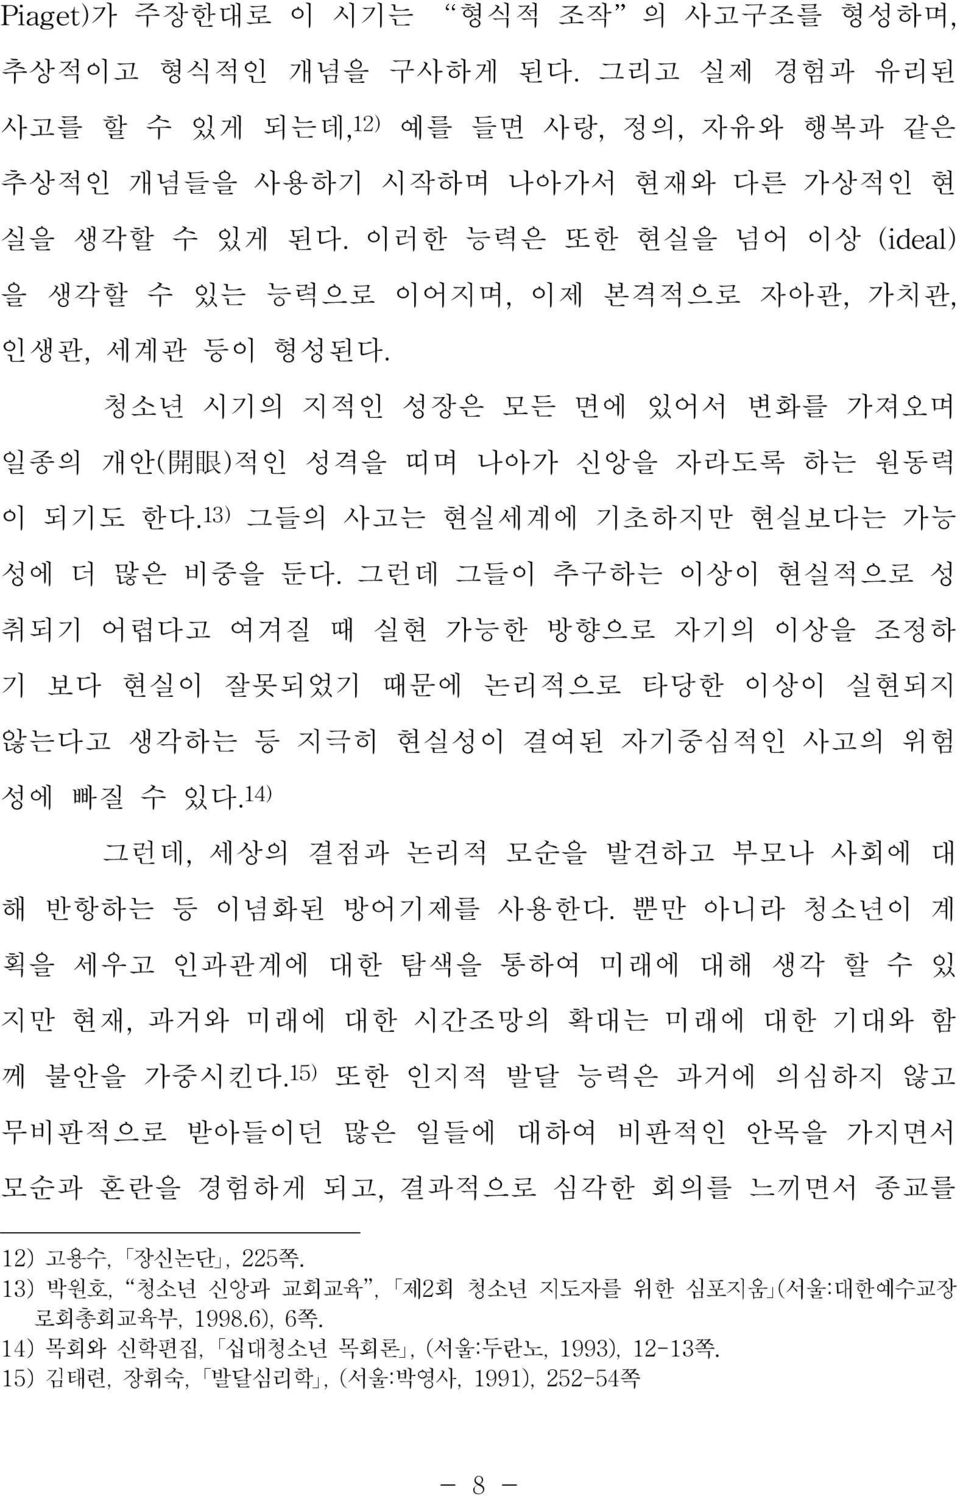 (서울:대한예수교장 로회총회교육부, 1998.6), 6쪽.